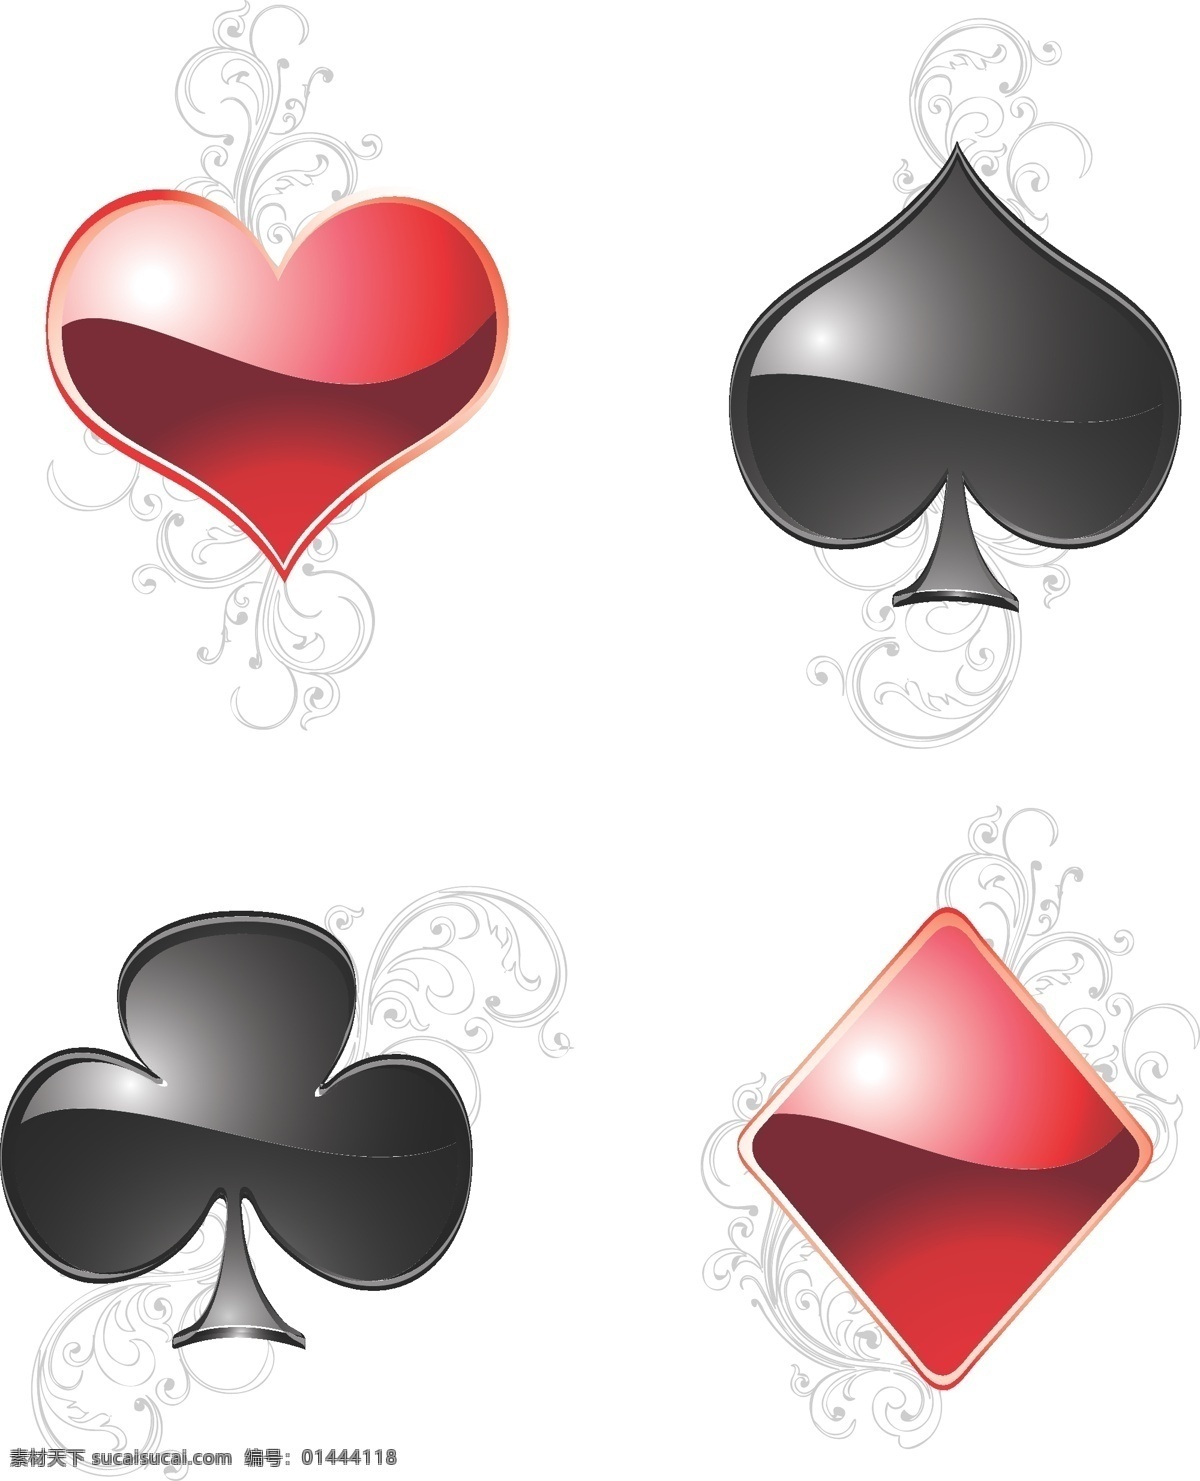 立体 扑克 花纹 矢量 方块 黑桃 红心 梅花 模板 扑克牌 设计稿 素材元素 扑克花纹 源文件 矢量图